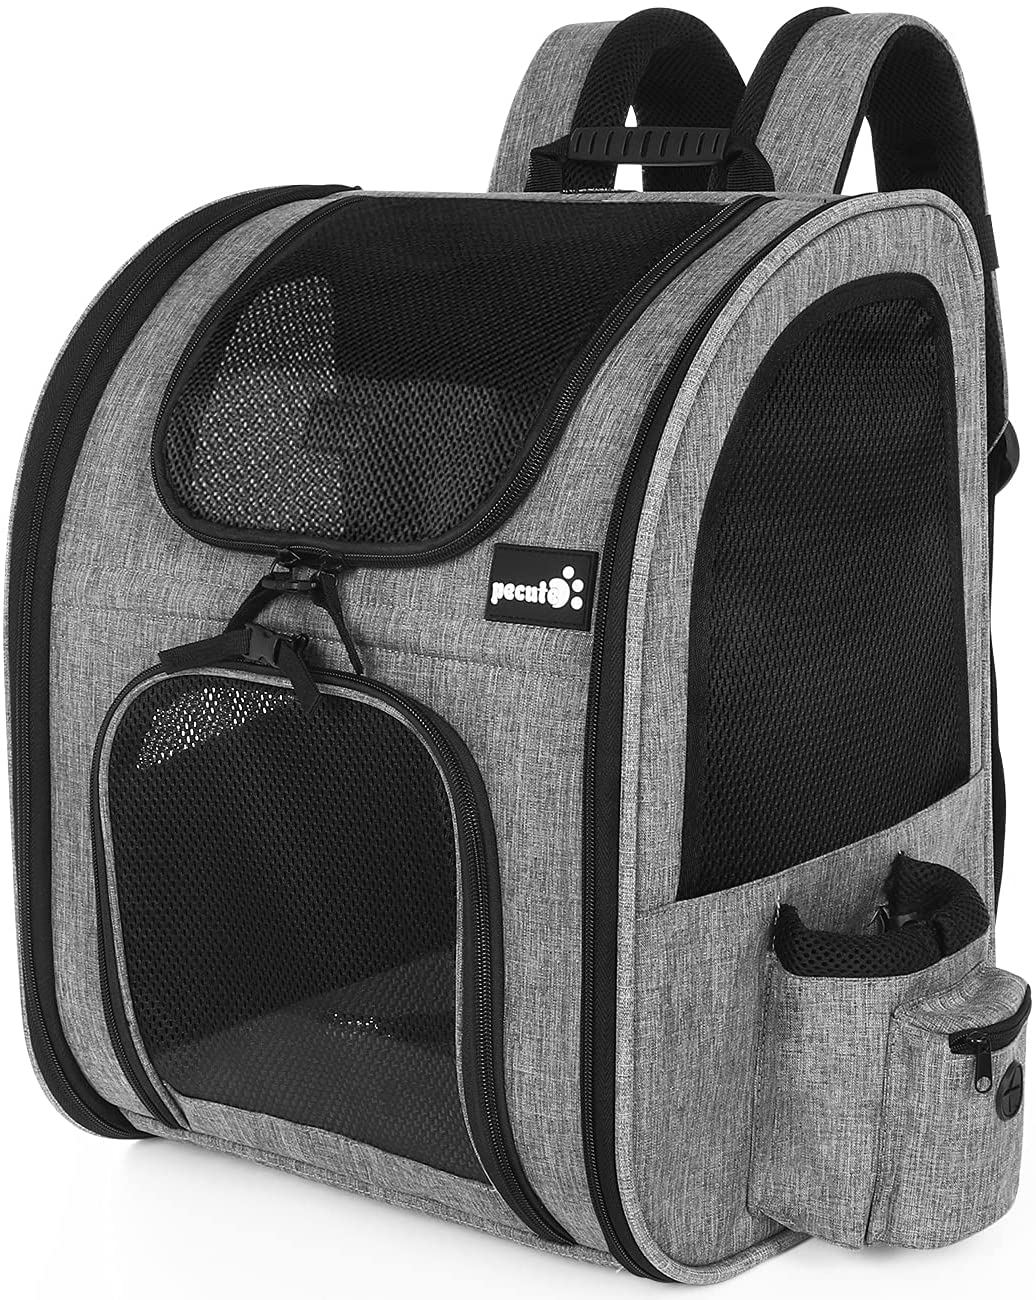 5,980円以上のお買い上げで送料無料 キャリーバッグ 猫用 犬用 リュック 折りたたみ式 荷重15kg グレー